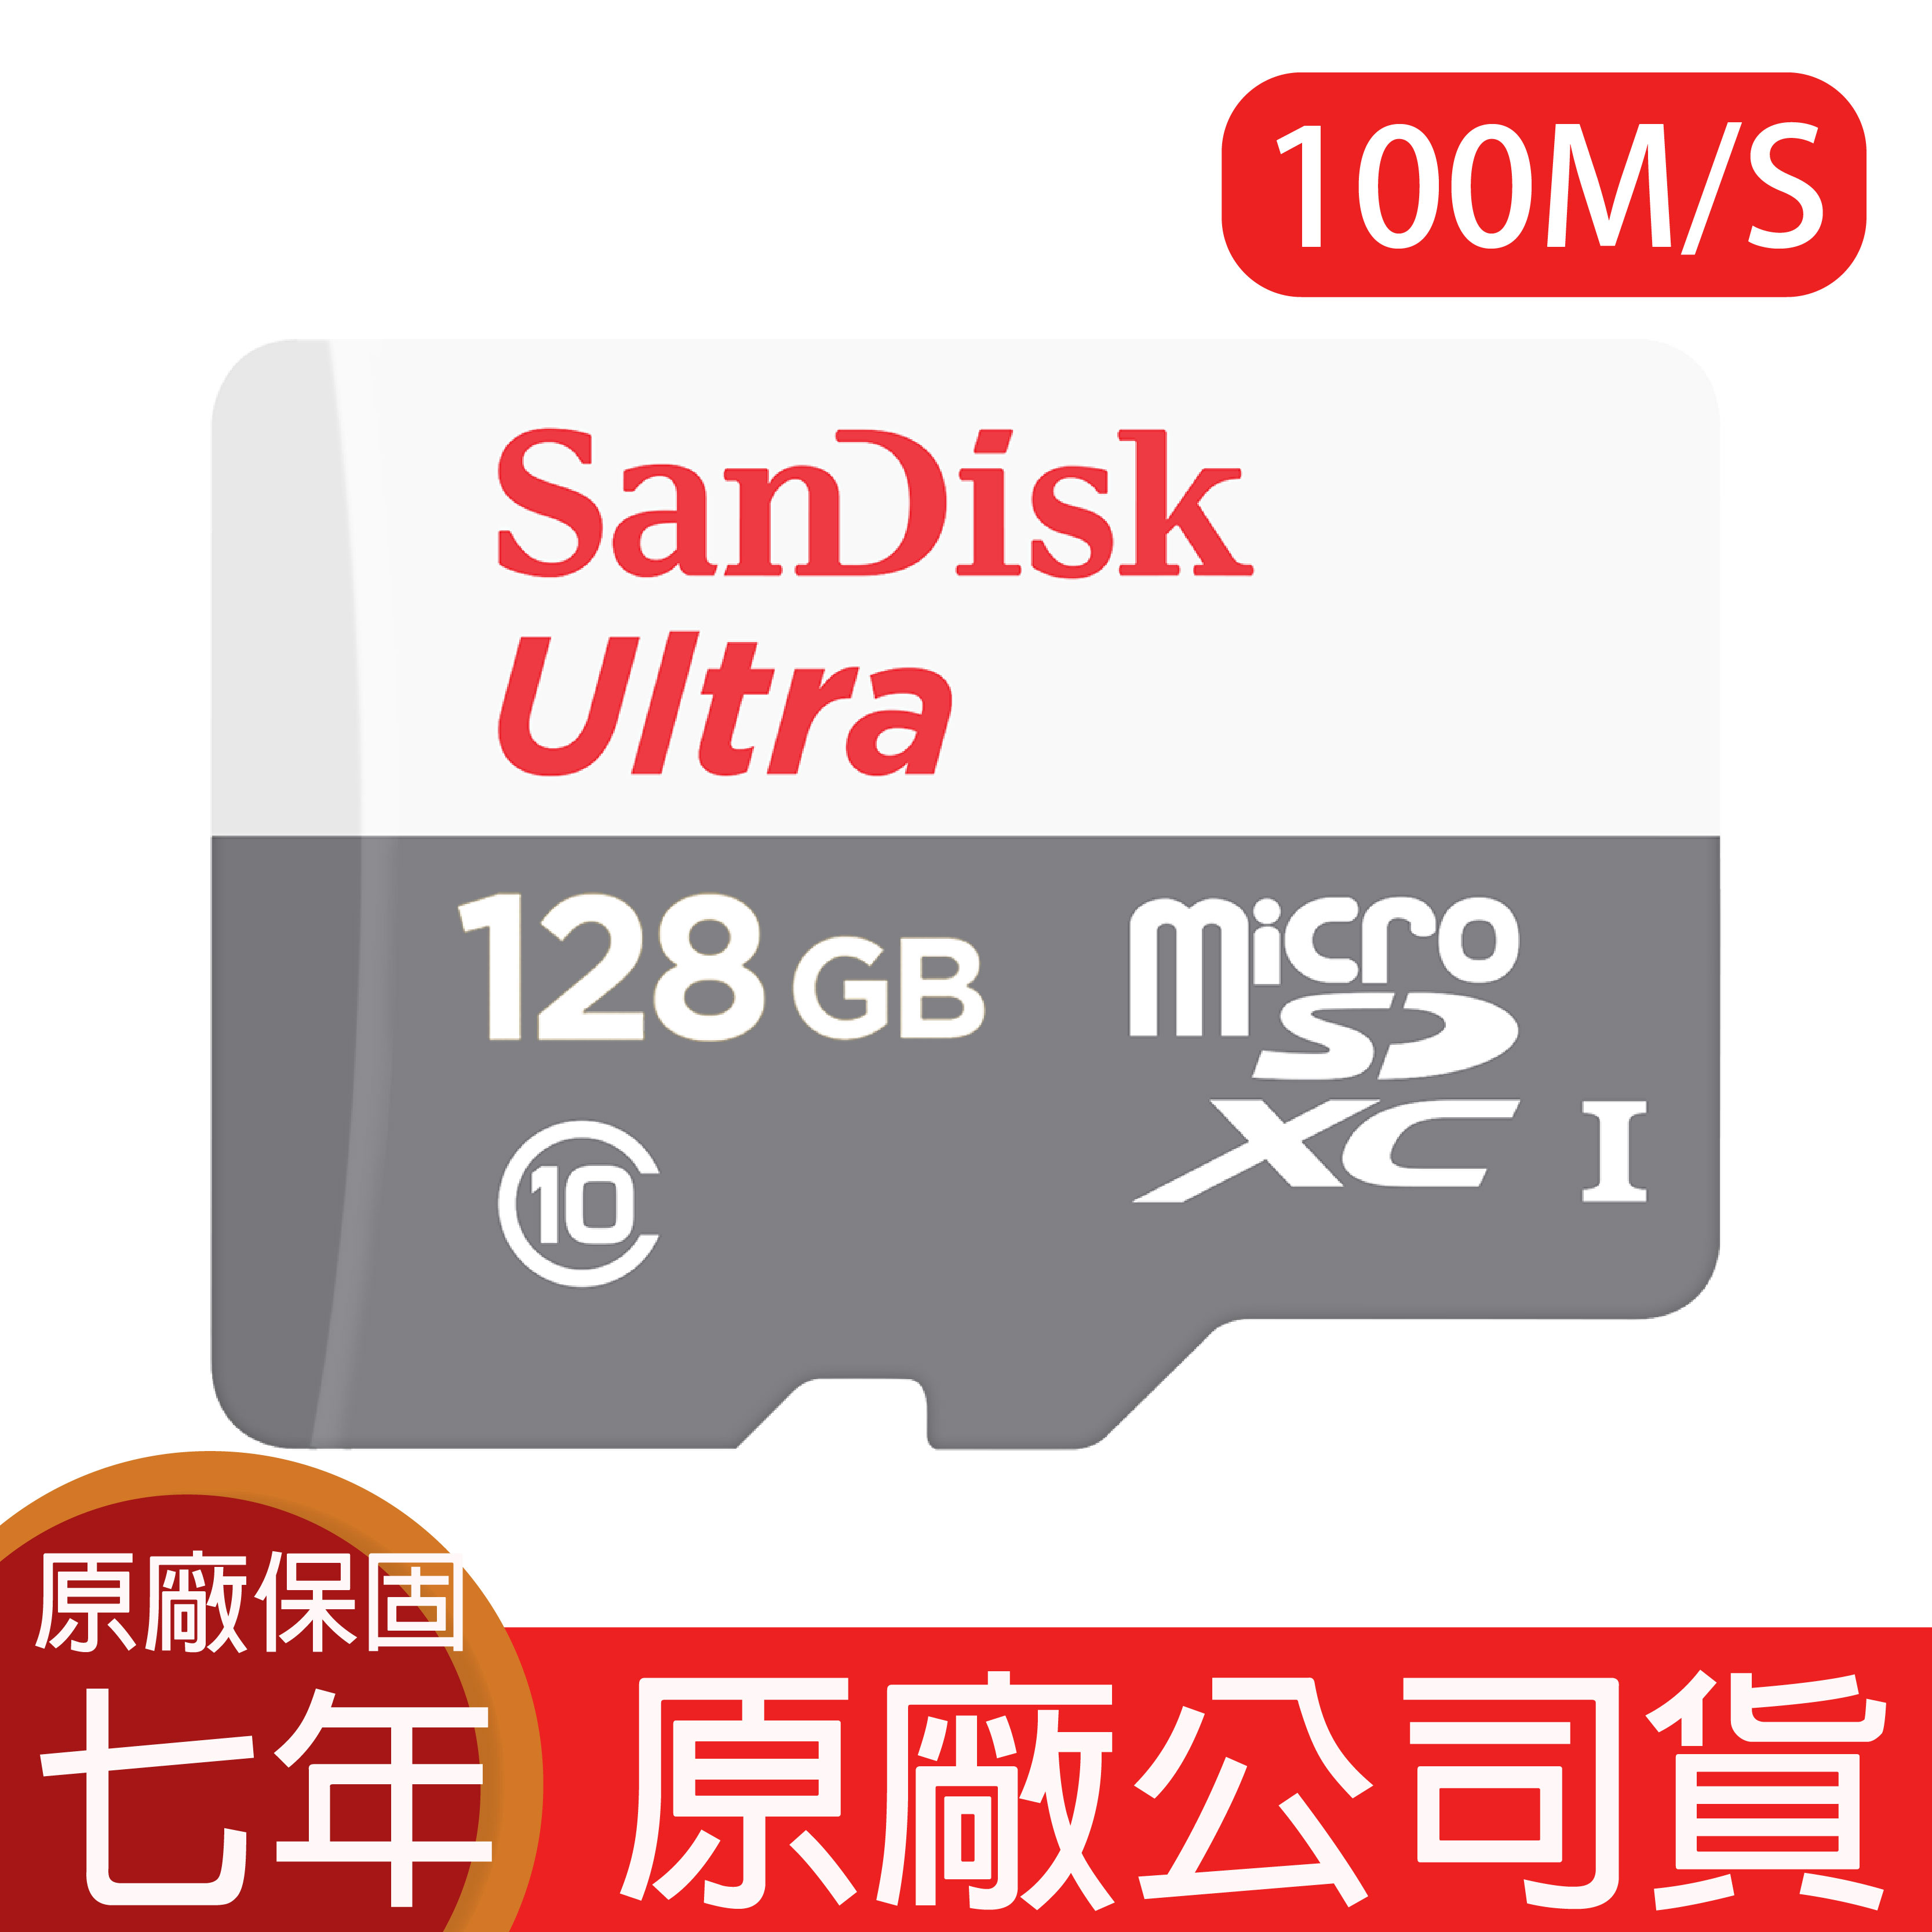 【9%點數】SANDISK 128G ULTRA microSD 80MB/S UHS-I C10 記憶卡 128GB 白灰 手機記憶卡 TF 小卡【APP下單9%點數回饋】【限定樂天APP下單】